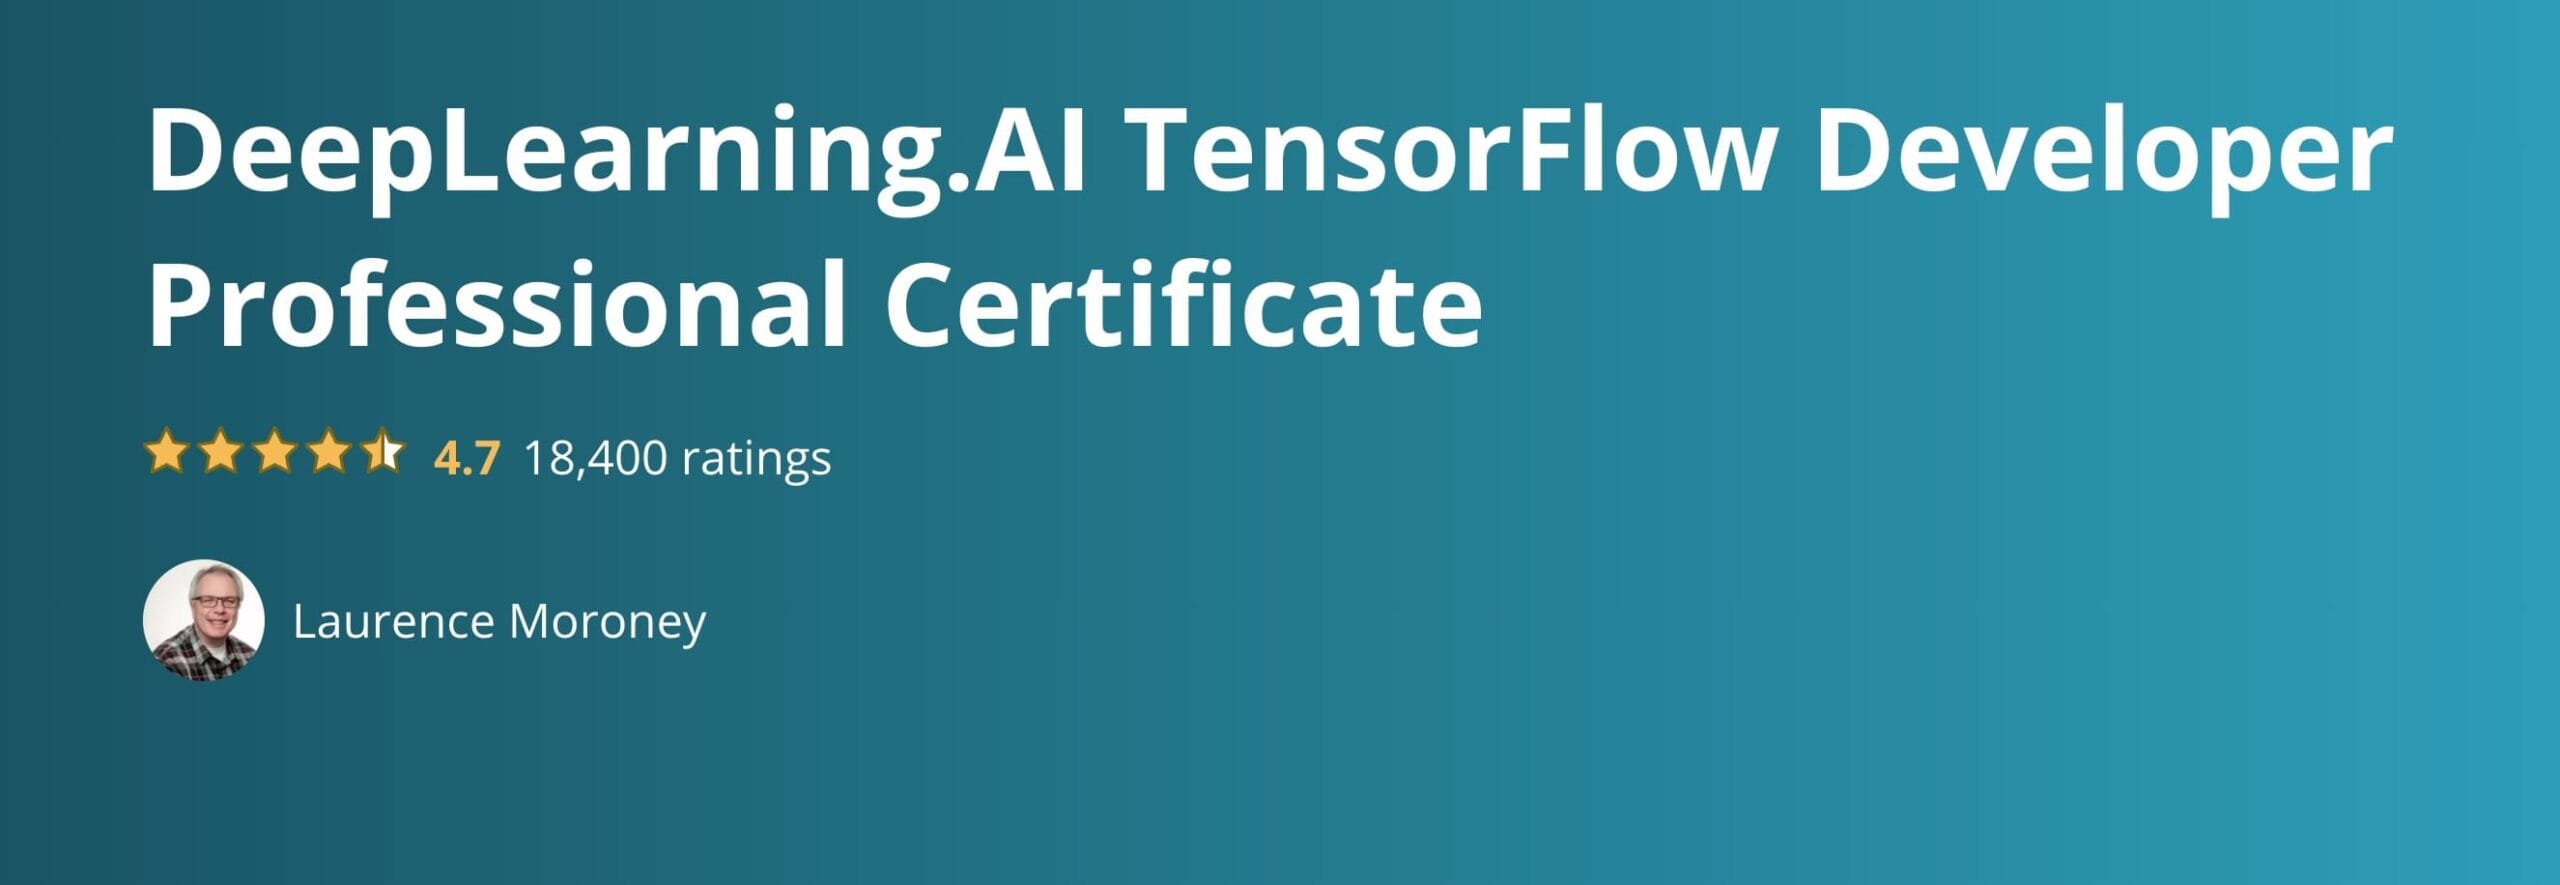 DeepLearning.AI TensorFlow Developer Professional Certificate